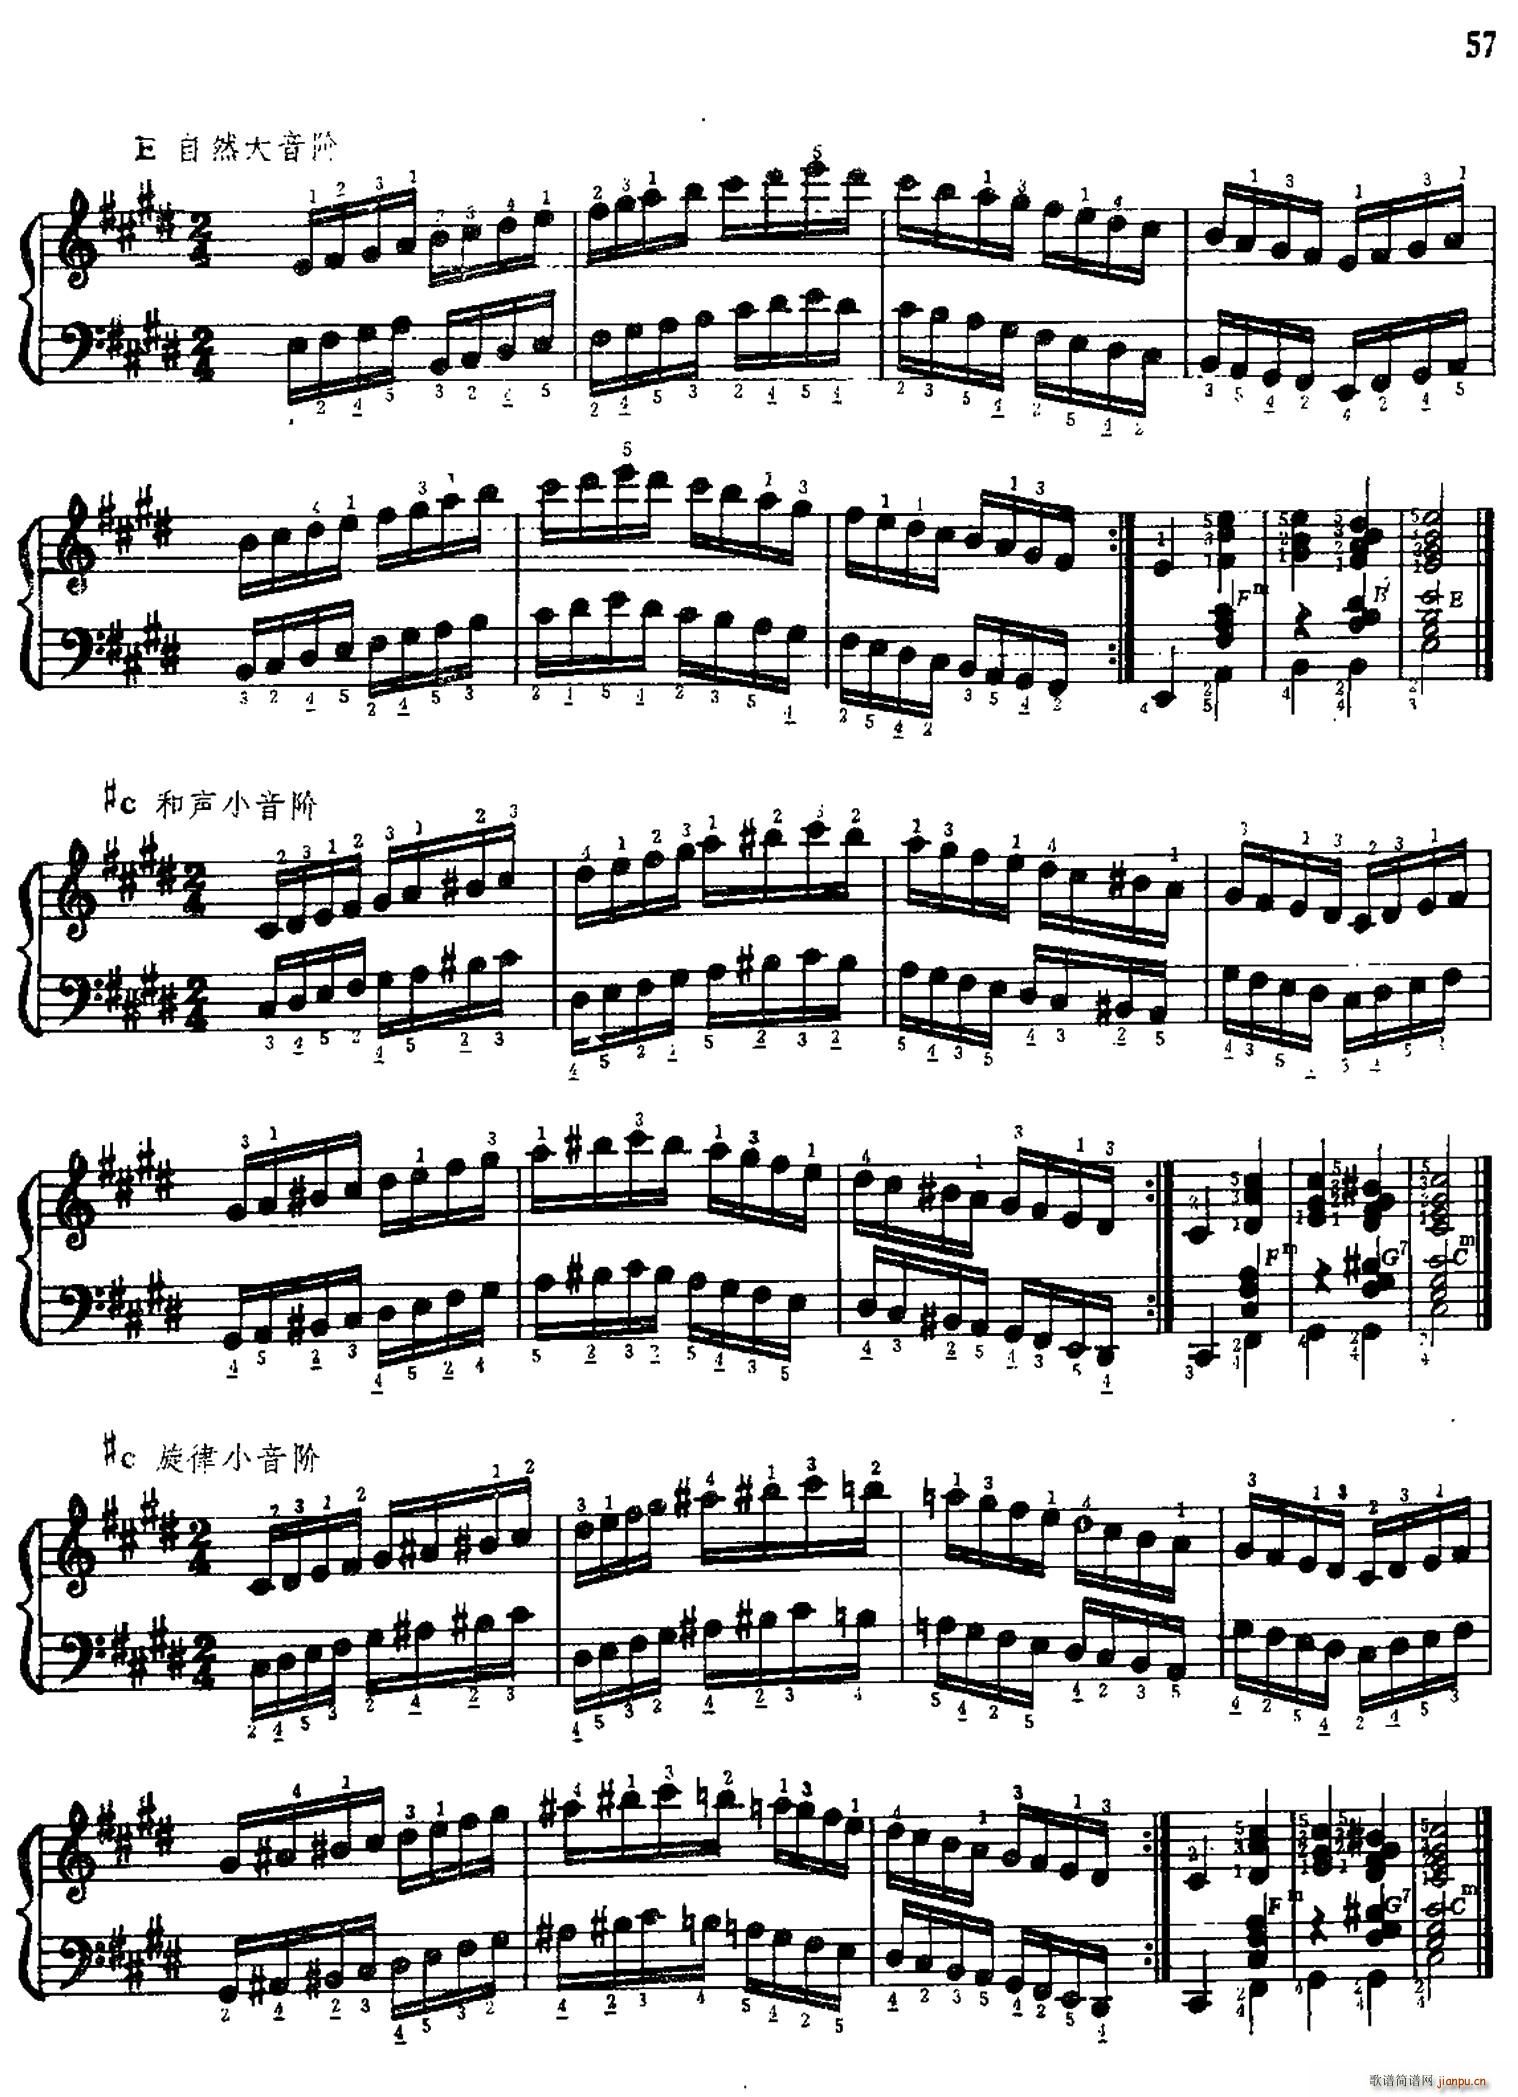 手风琴手指练习 第二部分 十二个大 小音阶的练习(手风琴谱)9